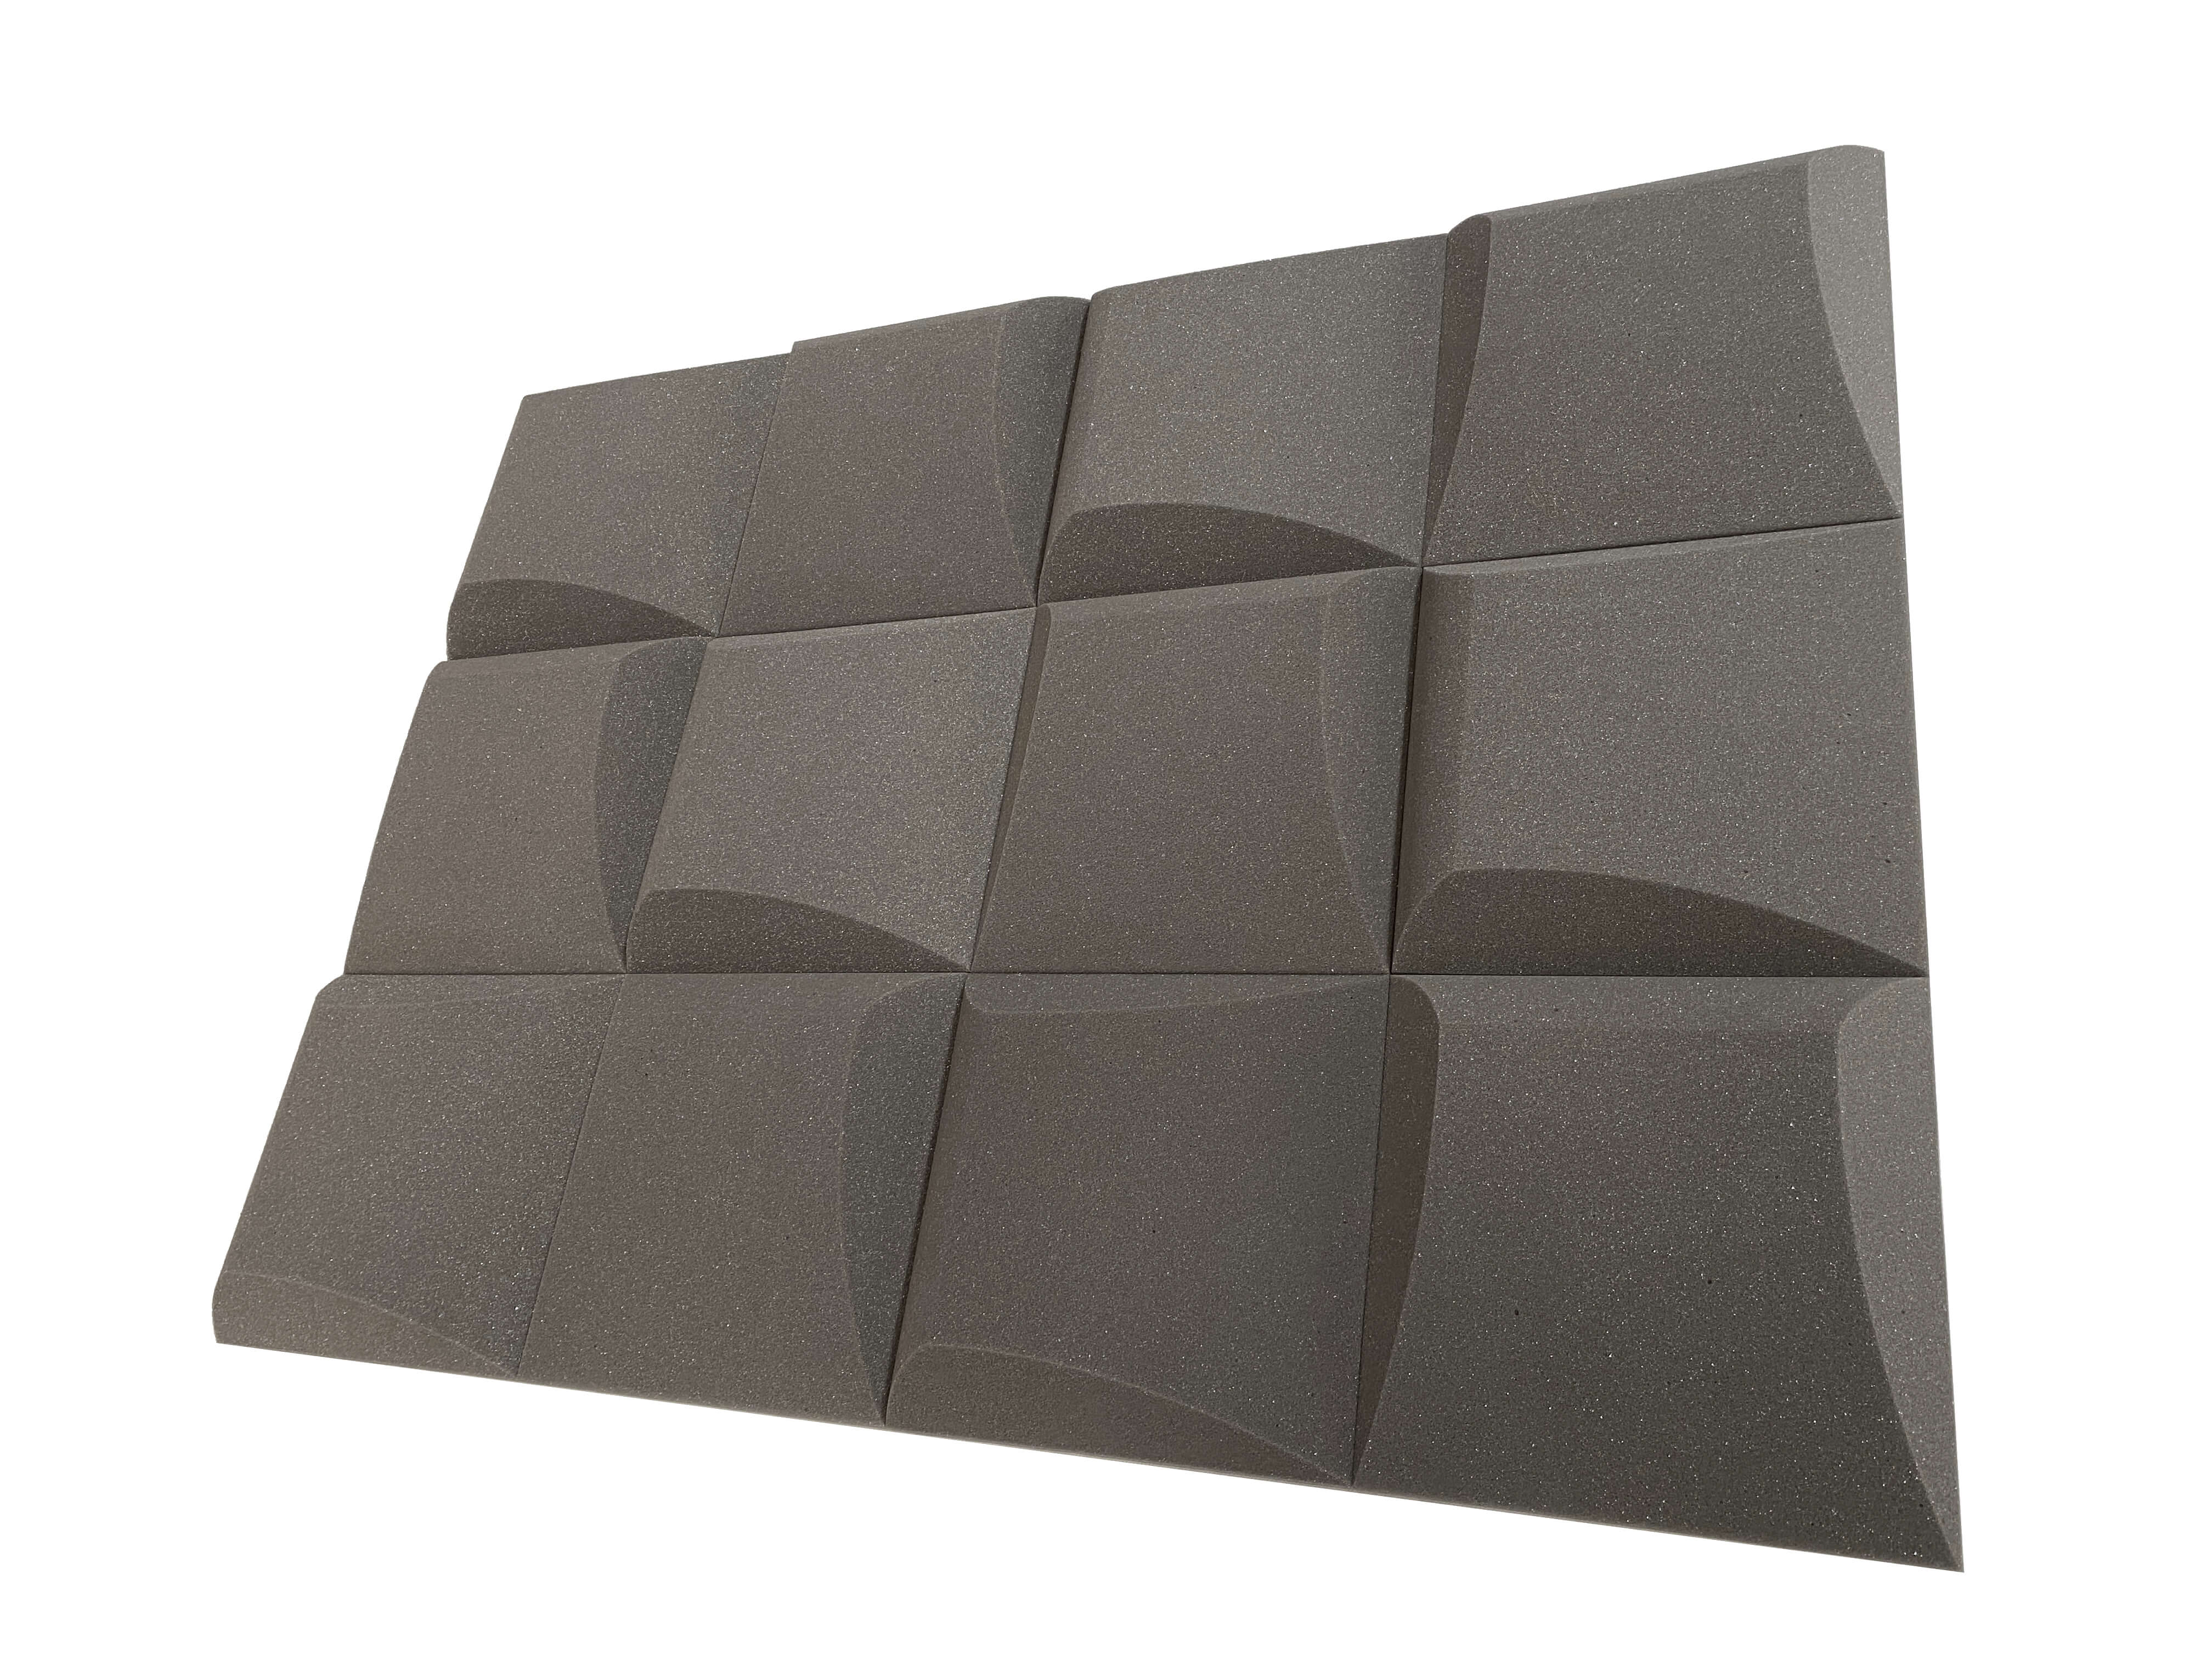 AeroFoil 12" Acoustic Studio Foam Tile Pack - 12 Tiles, 1.1qm Coverage-1